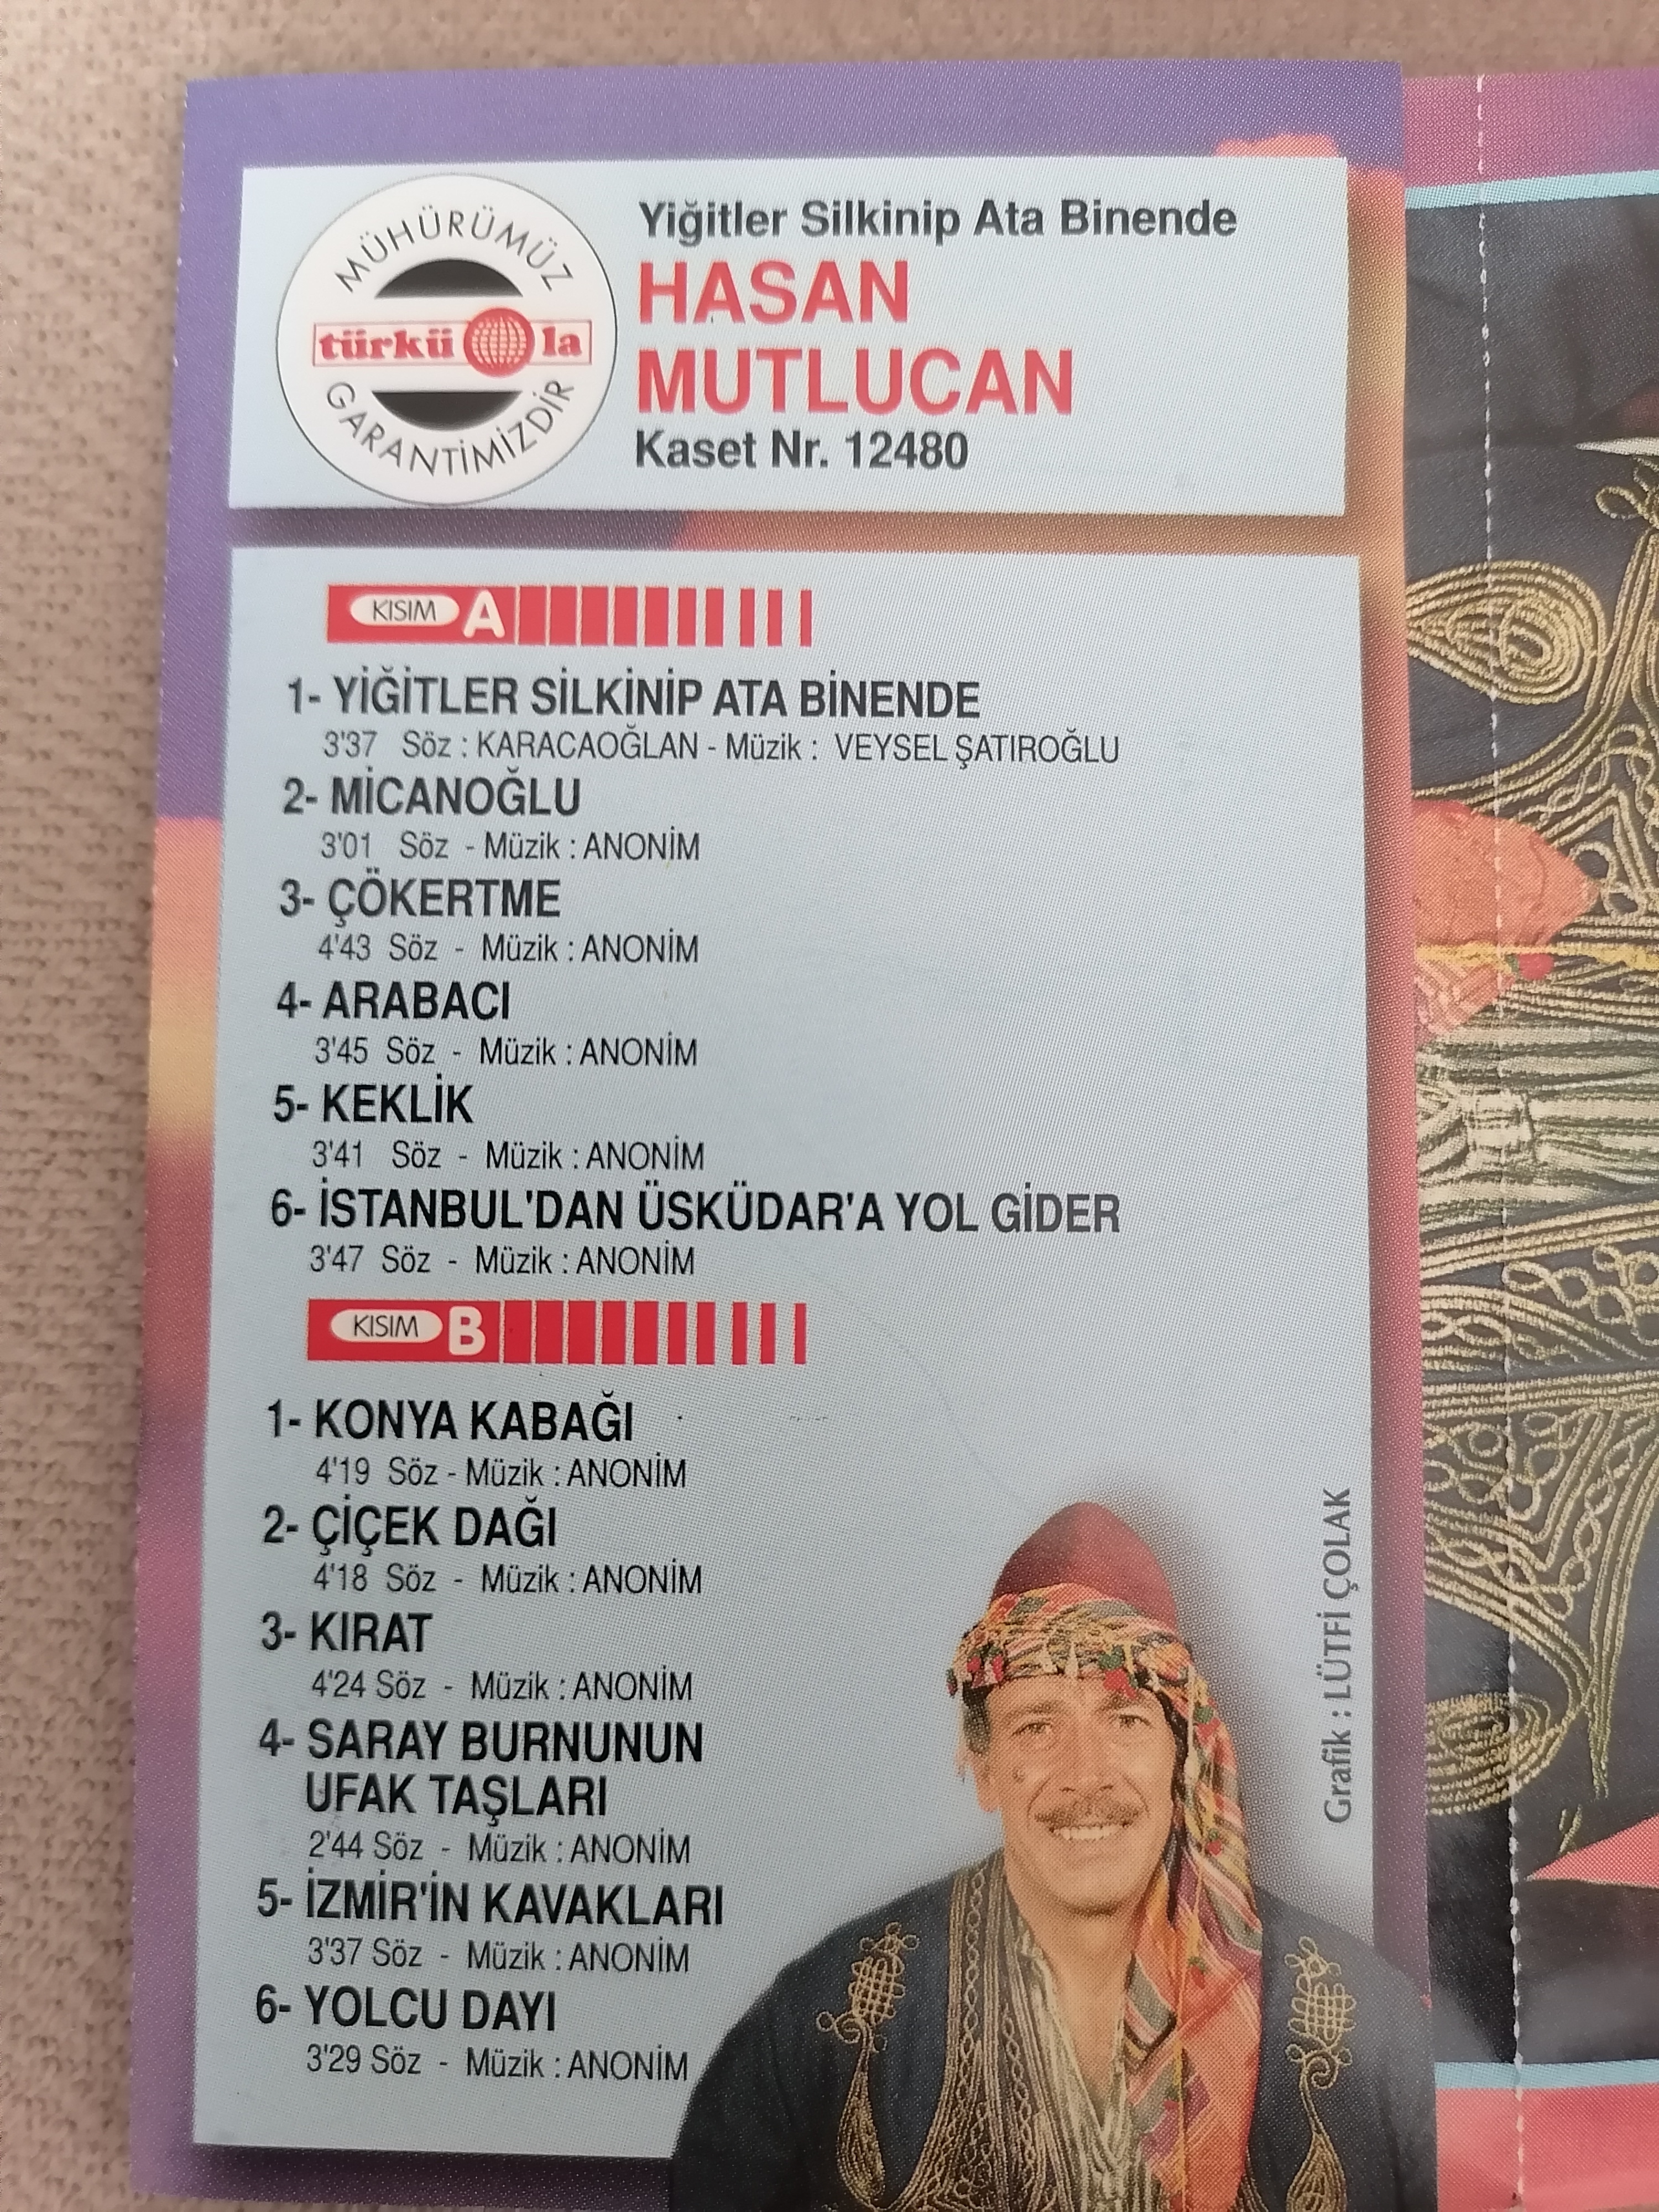 HASAN MUTLUCAN - Yiğitler Silkinip Ata Binende - 1995 Türkiye Basım 2. El Kaset